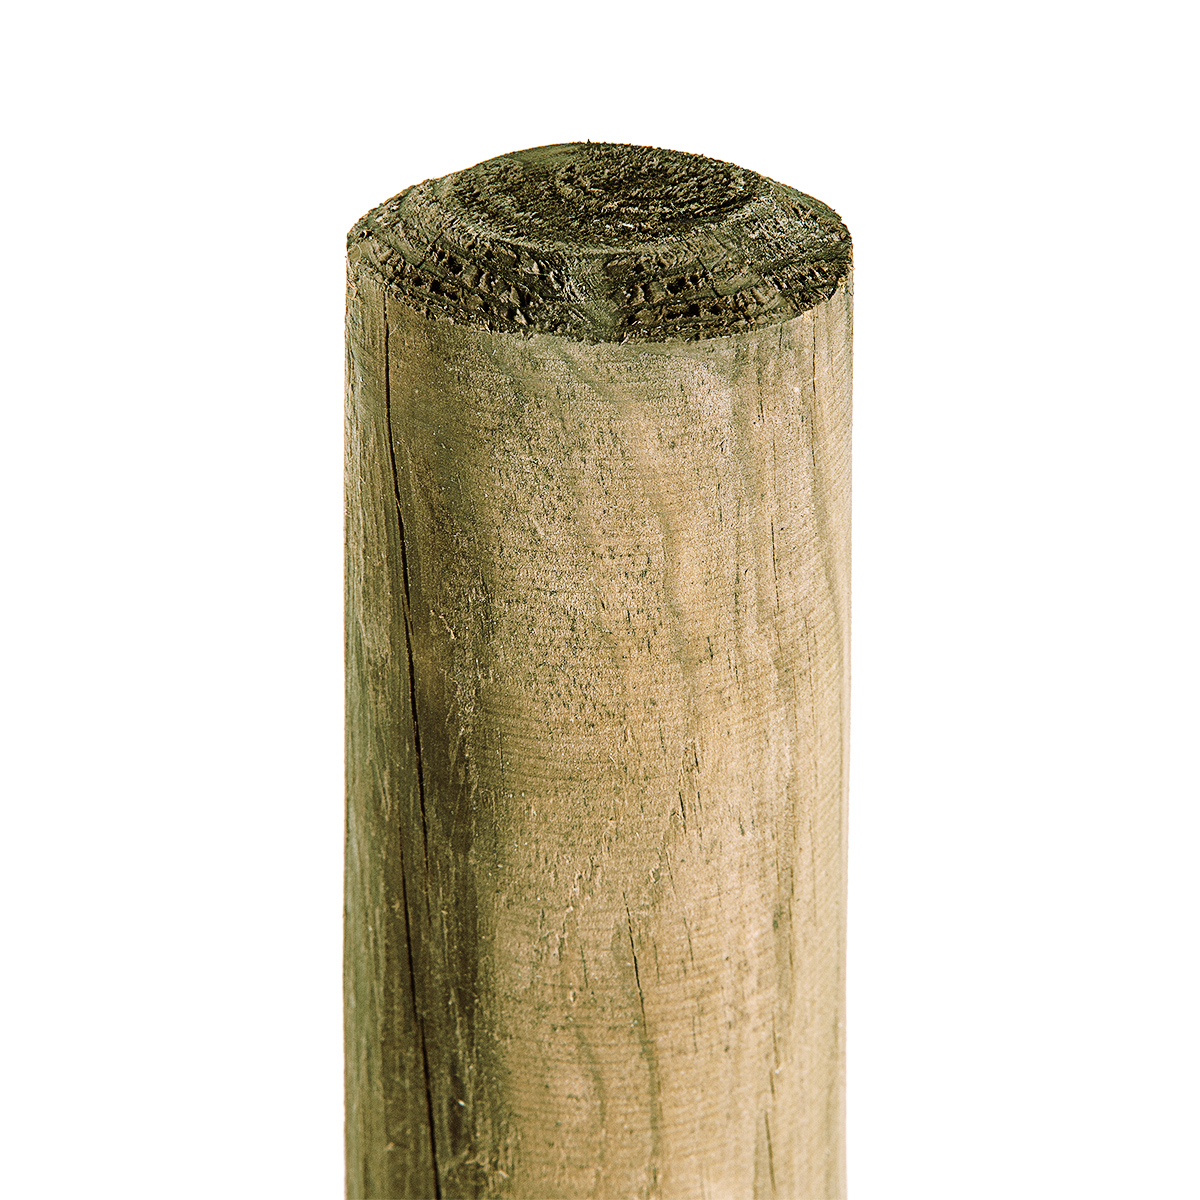 Holzpfahl 6cm Stärke x 125cm Höhe KDI-grün Pfahl Baumpfahl für Gartenzaun